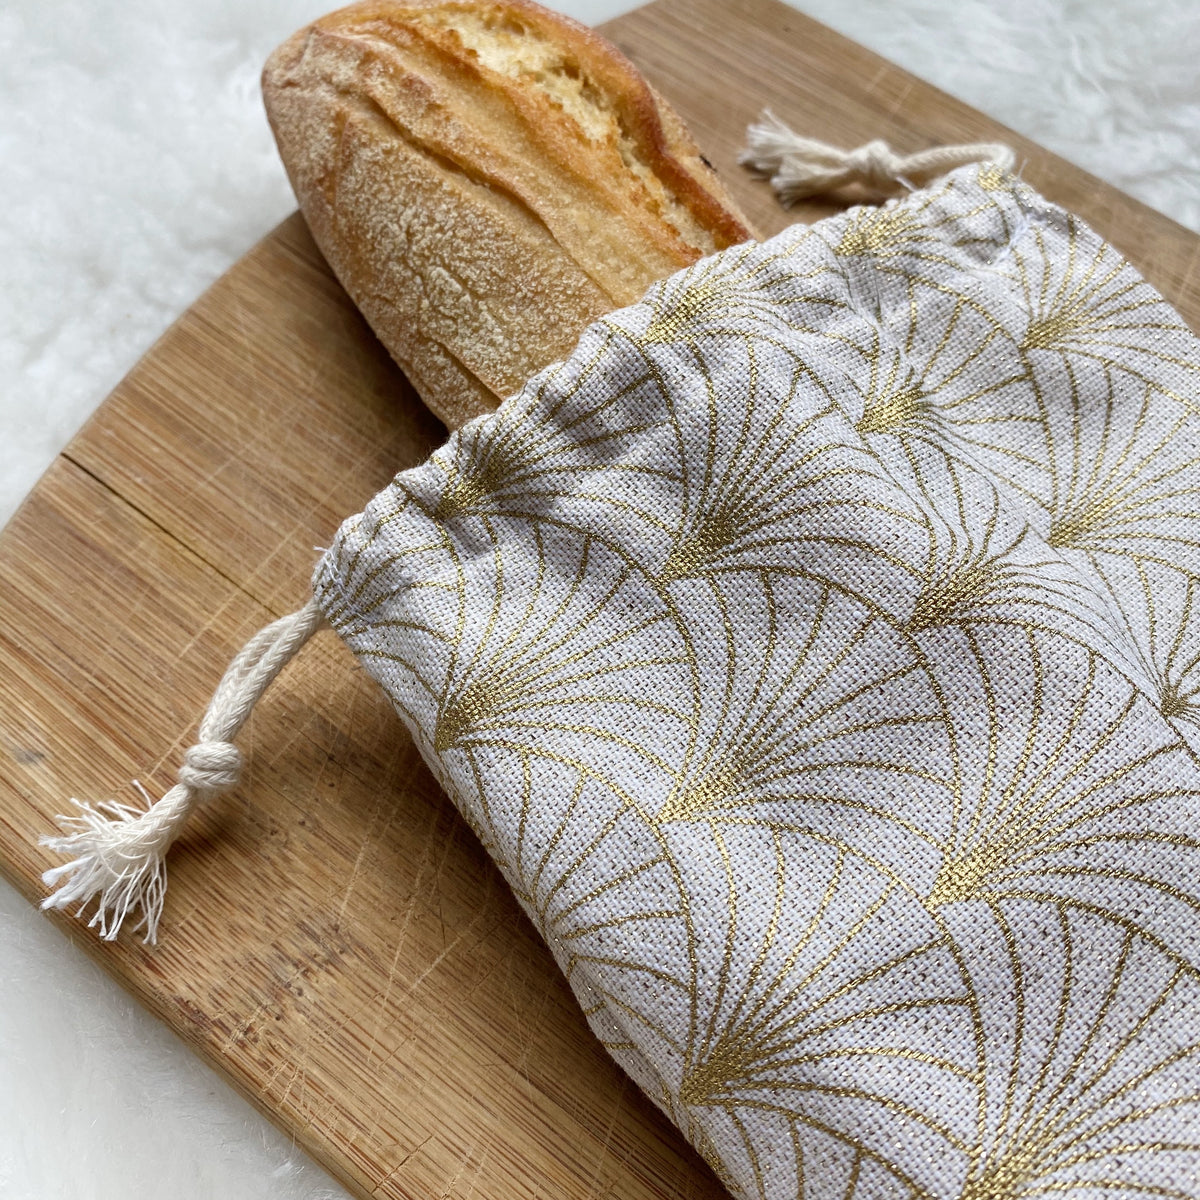 Dans le sac - Sac à pain réutilisable - Baguette